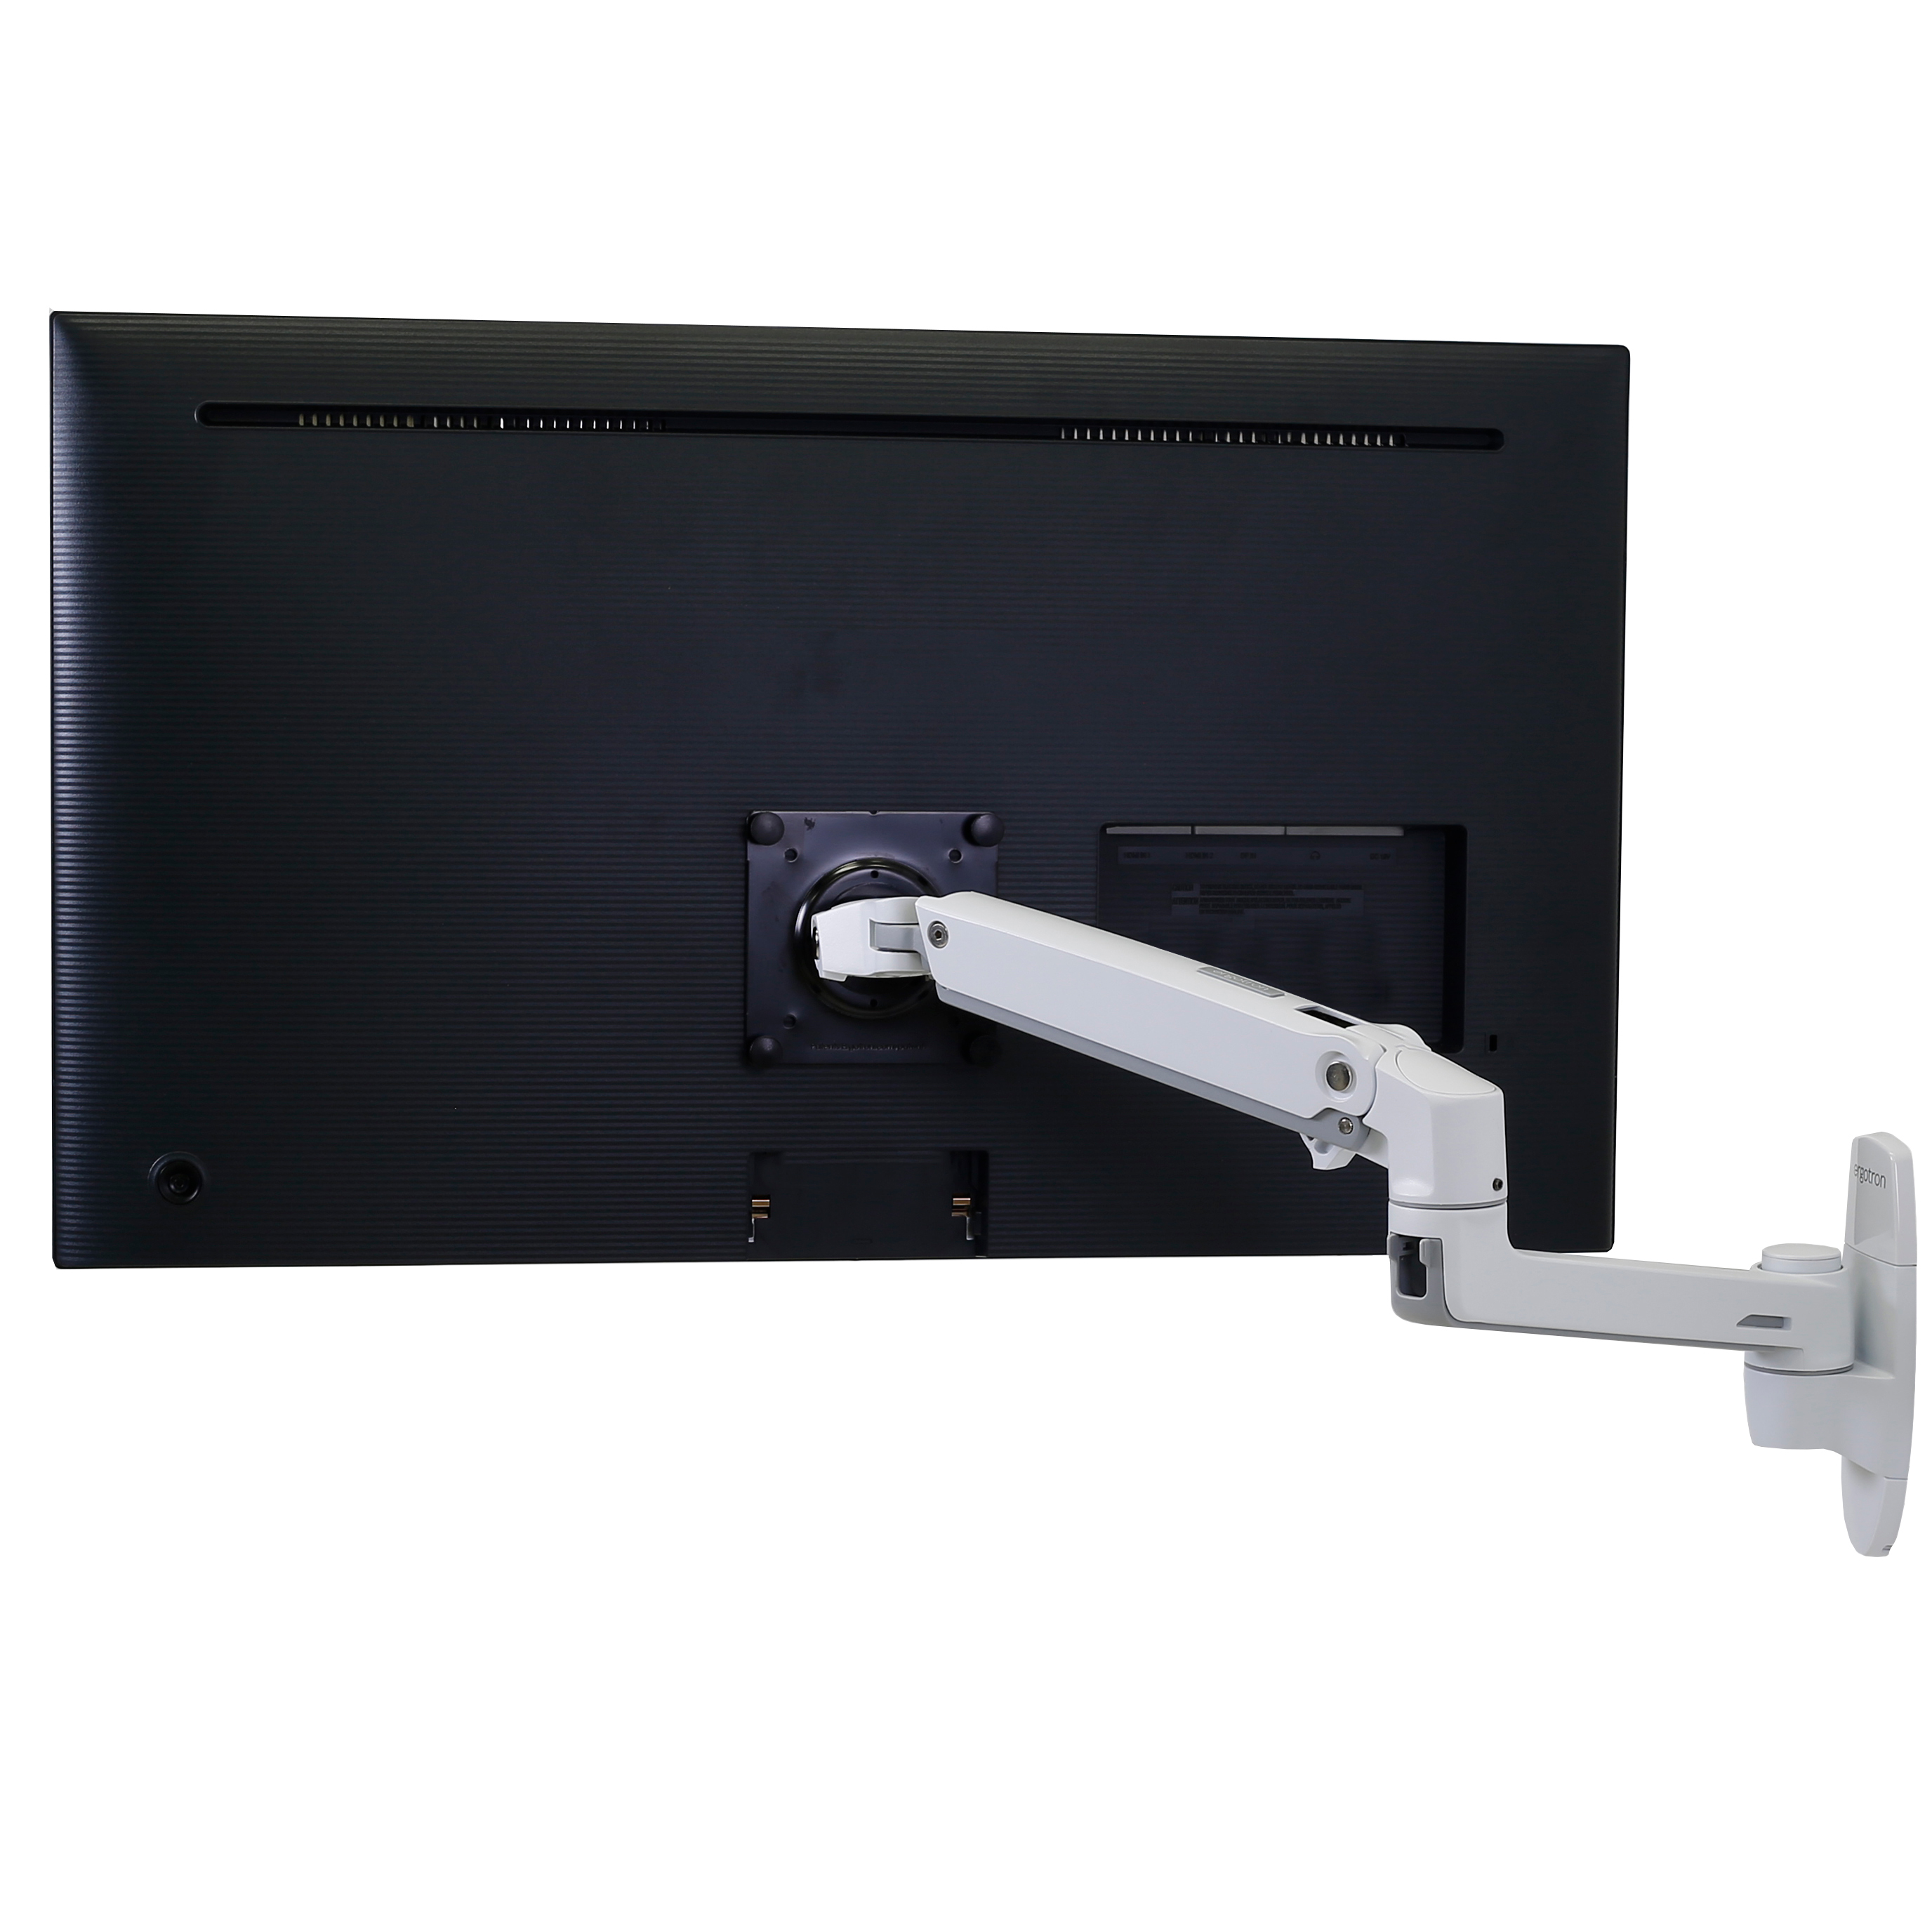 Monitor-Wandhalterung mit Arm für 1 Monitor DURABLE: HxBxT 350 x 290 x 120  mm